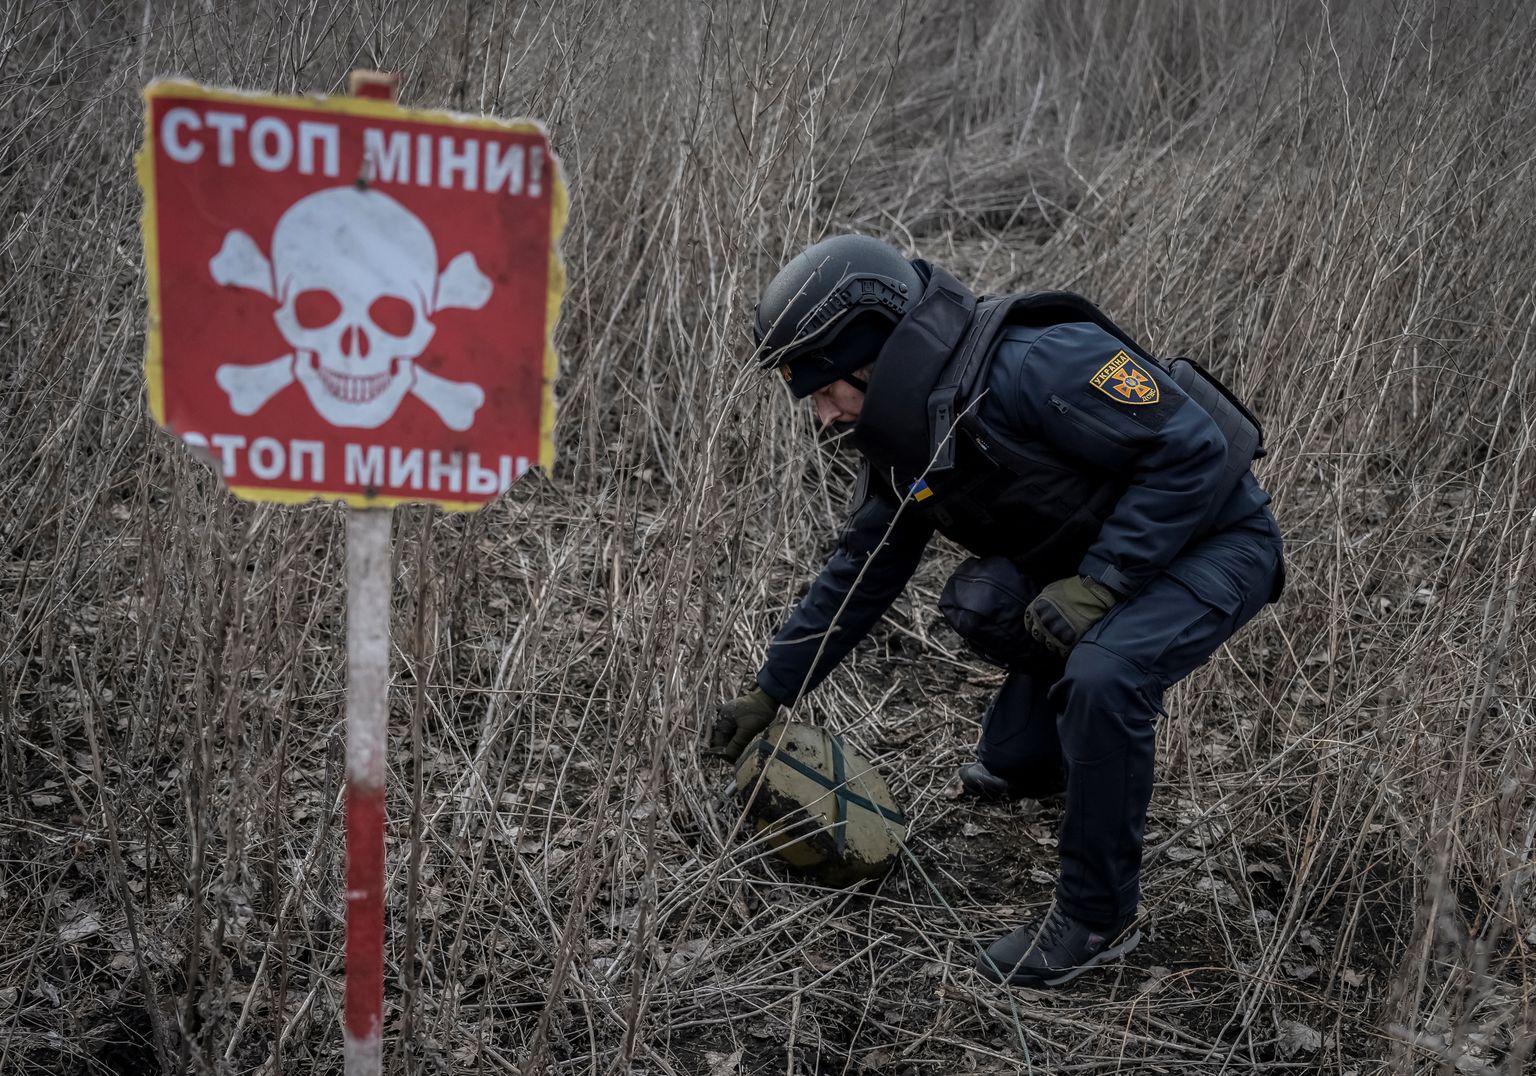 Ukraina demineerija kontrollib maad, et leida miine ja lõhkemata mürske, 21. märtsil 2023.